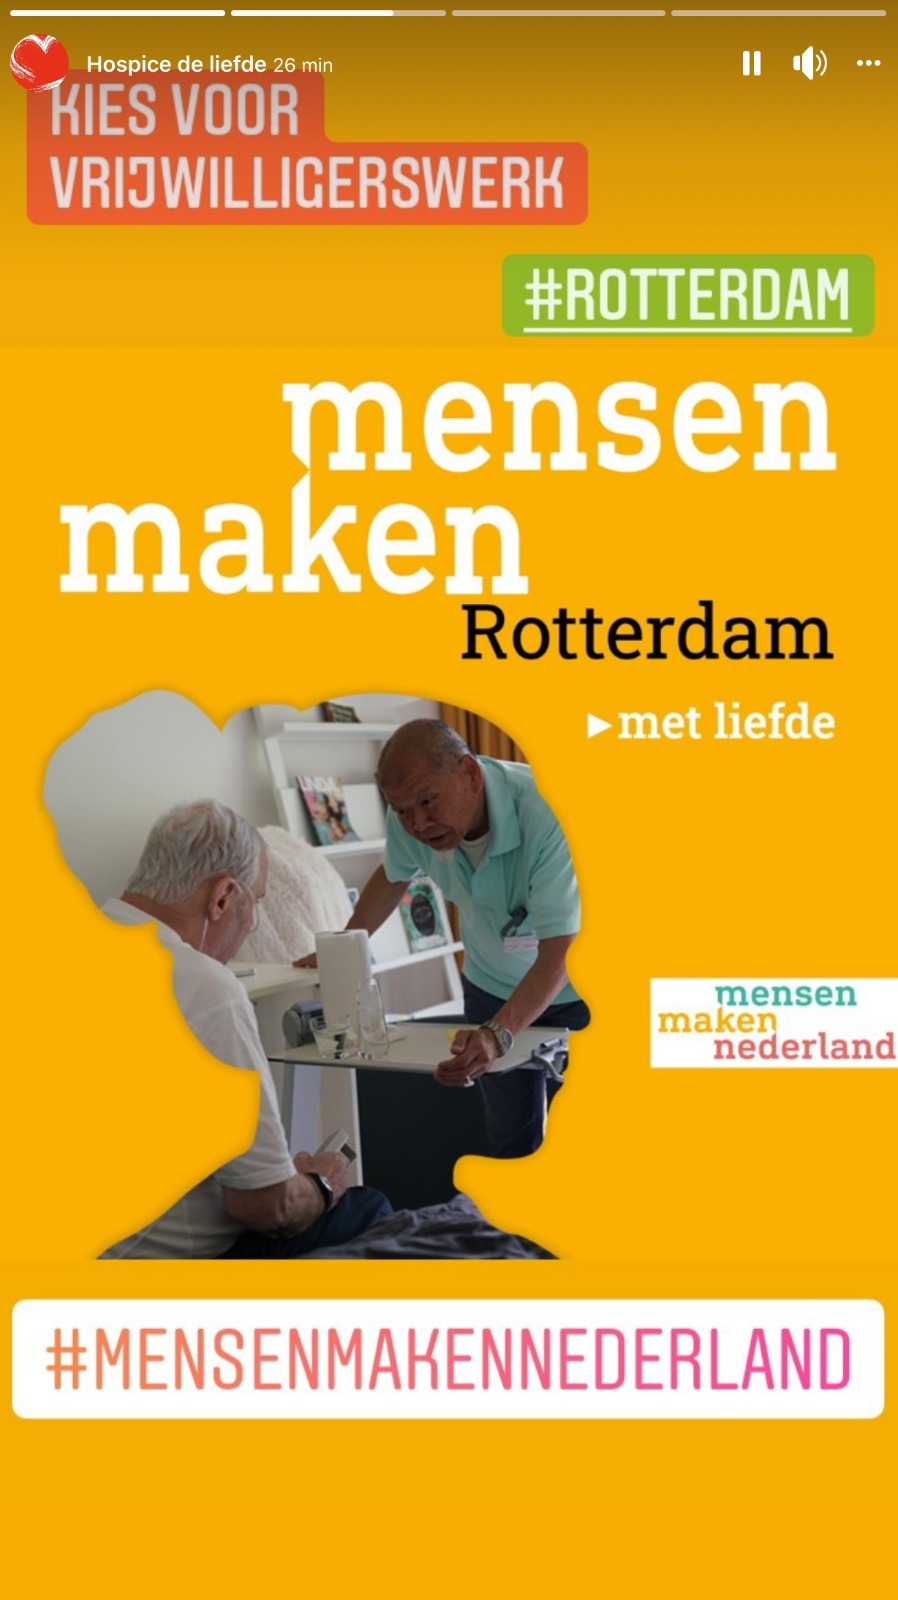 Hospice de Liefde doet mee met de campagne Mensen maken Nederland